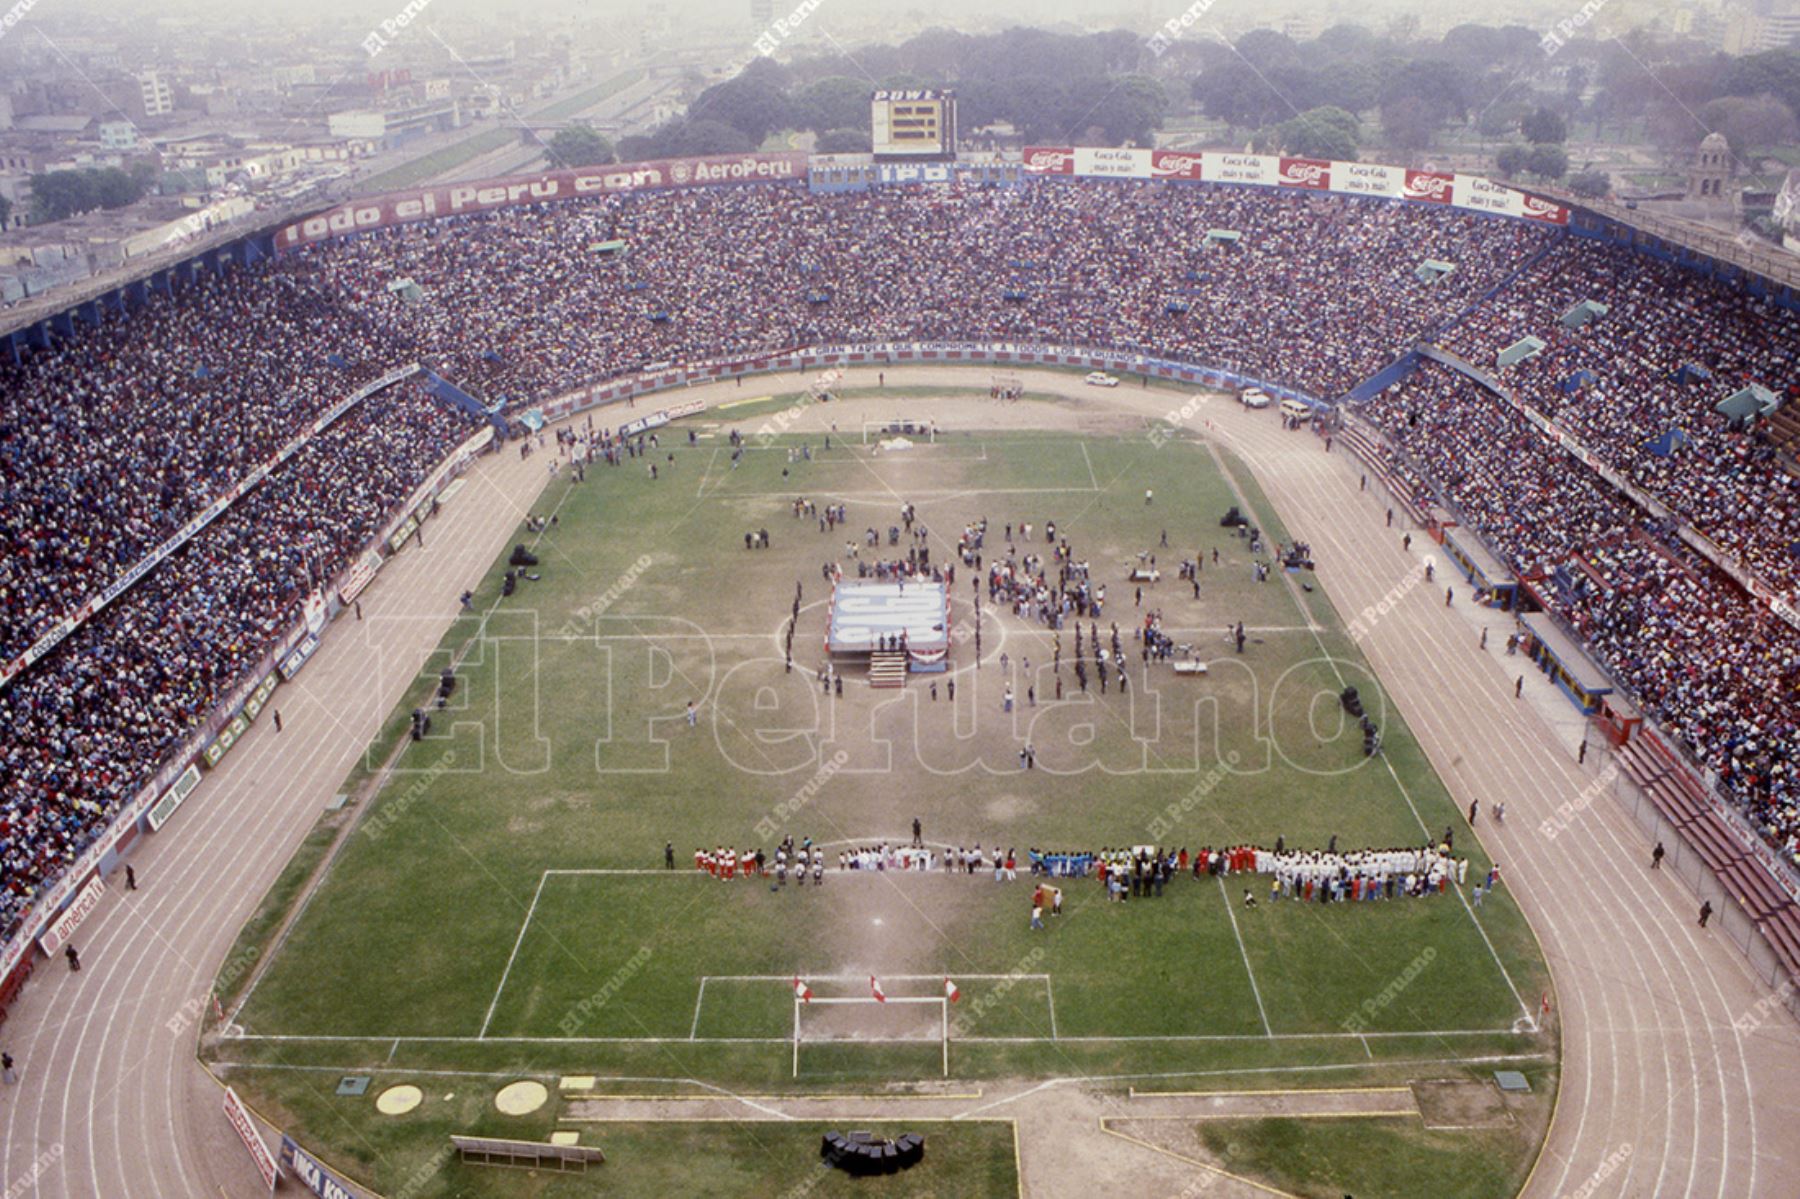 Lima - 2 octubre 1988 / Multitudinaria bienvenida en el  Estadio Nacional a la selección peruana de voleibol, subcampeona olímpica en los juegos de Seúl 1988. Foto: Archivo Histórico de El Peruano / Leoncio Mariscal